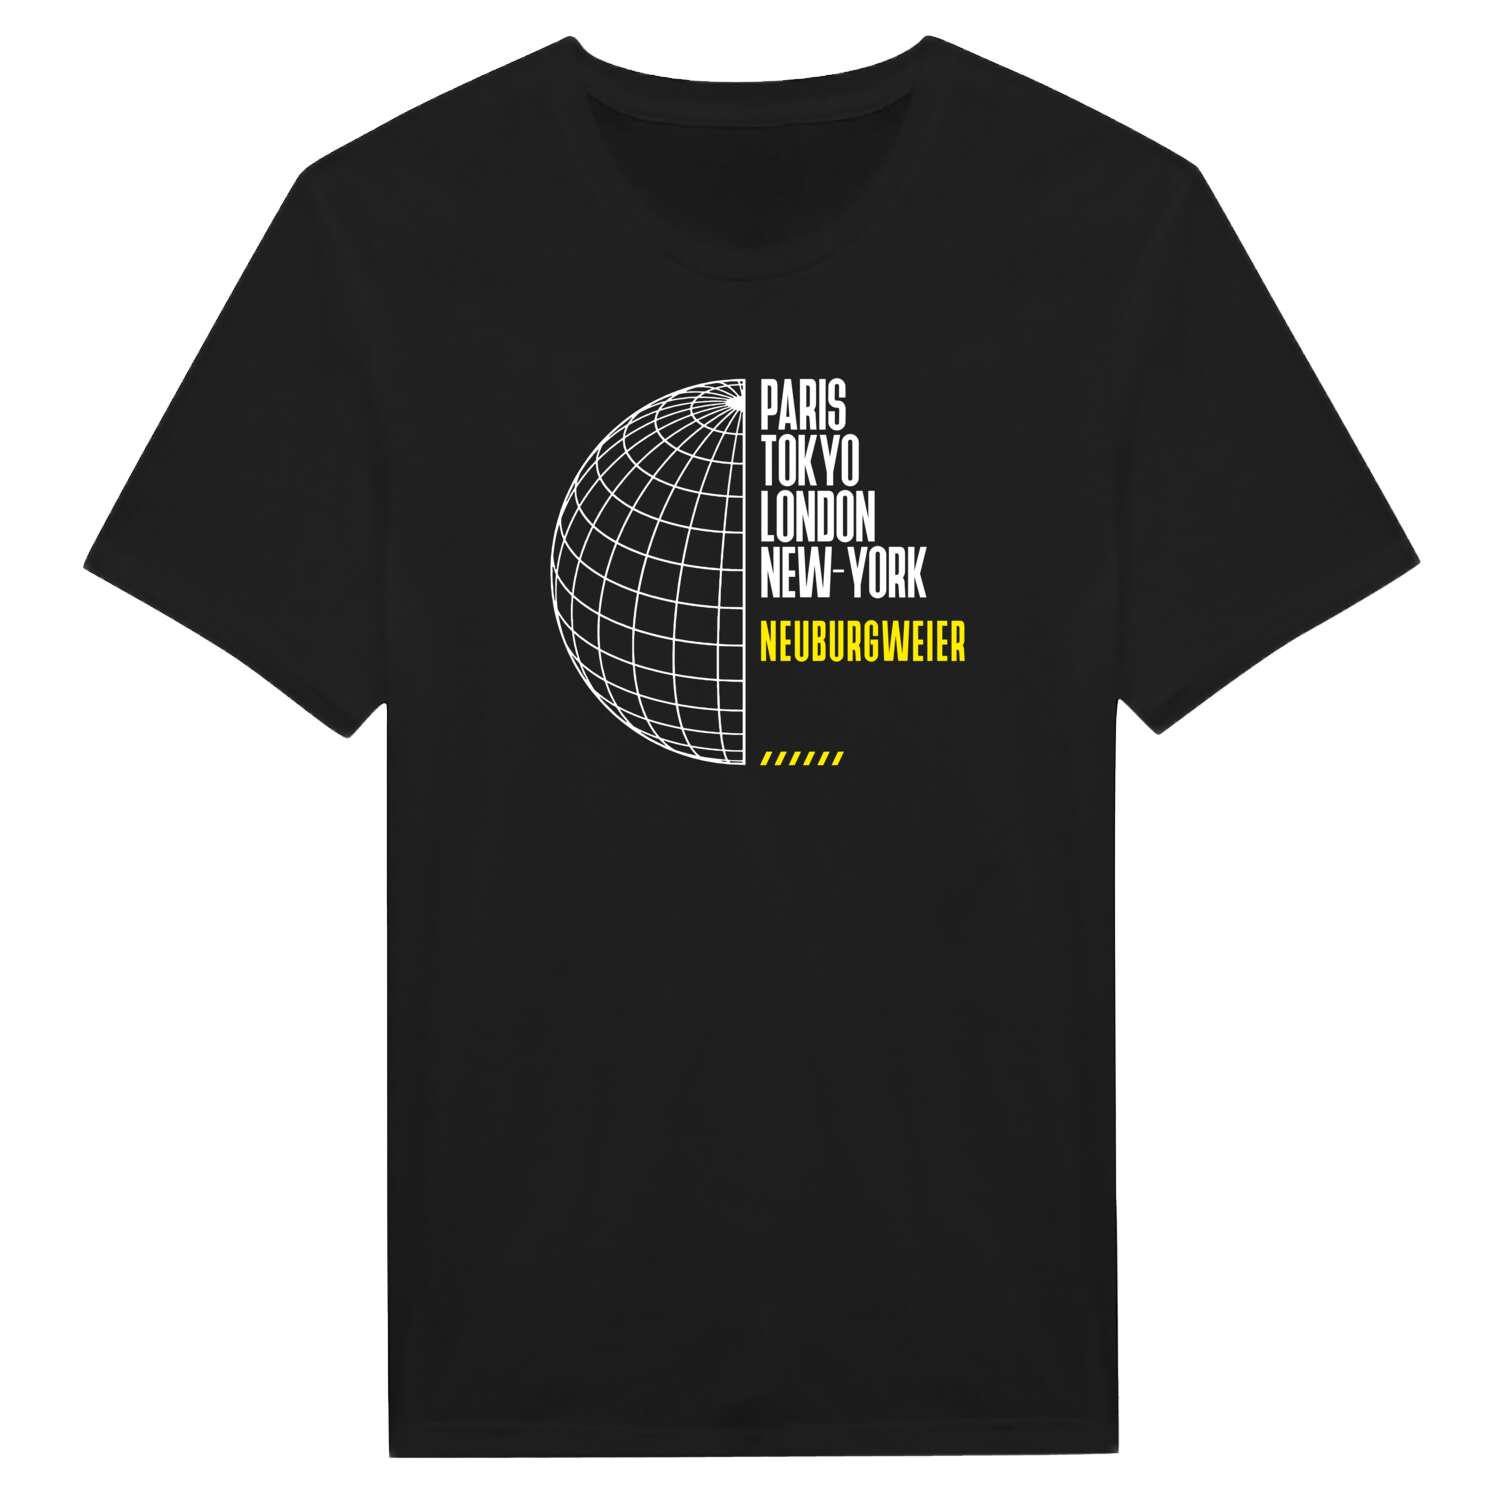 Neuburgweier T-Shirt »Paris Tokyo London«